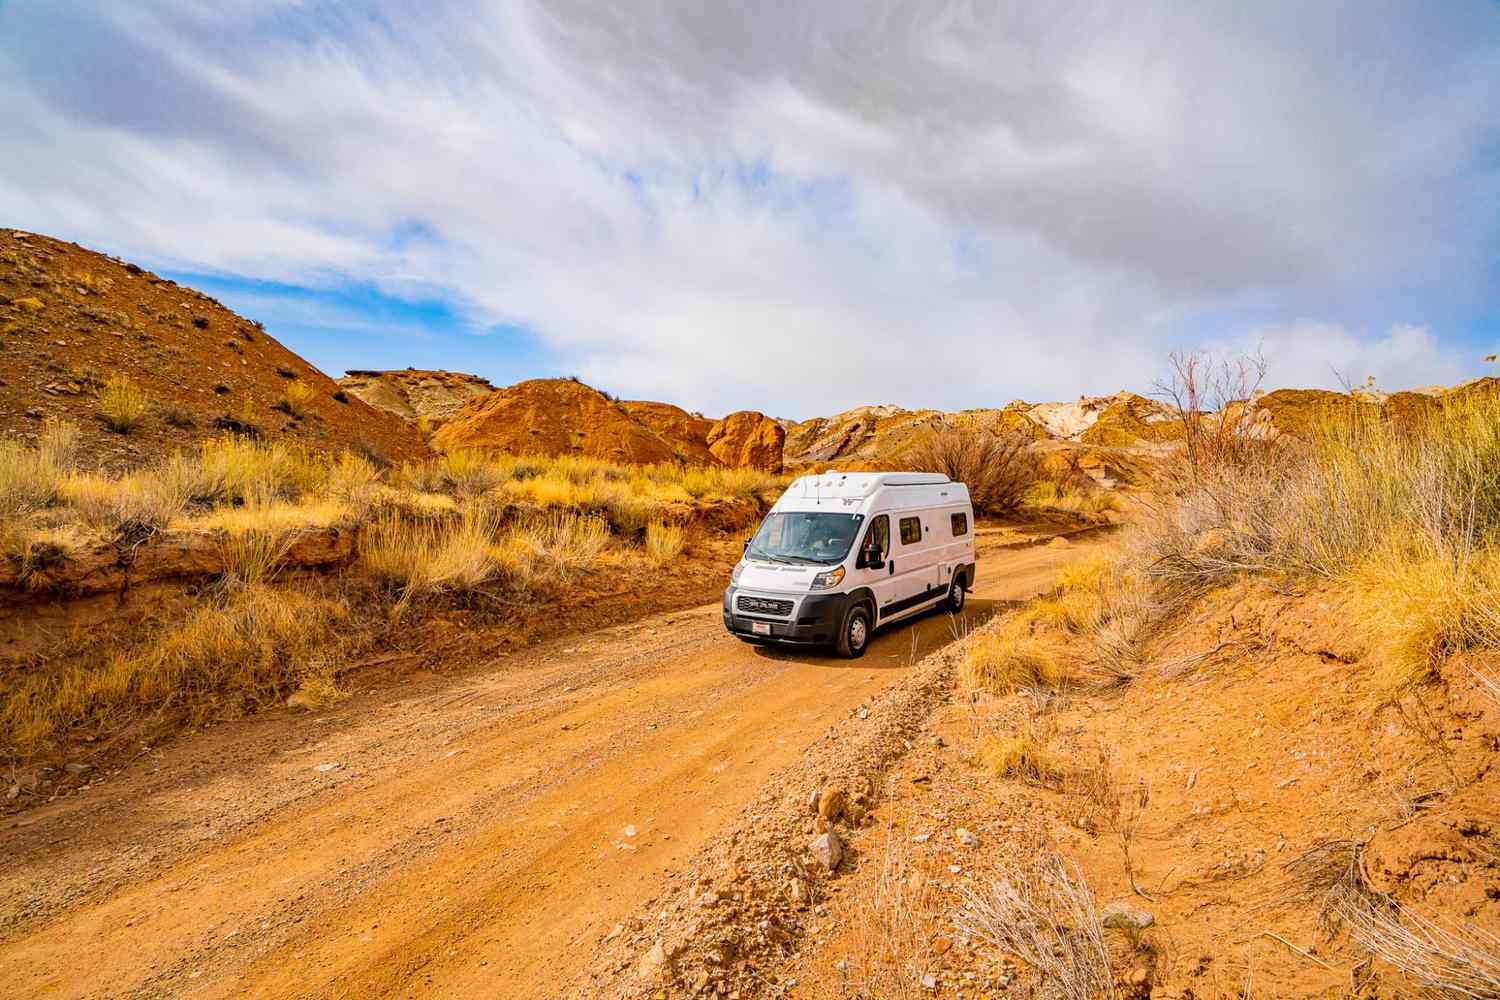 RV driving in desert